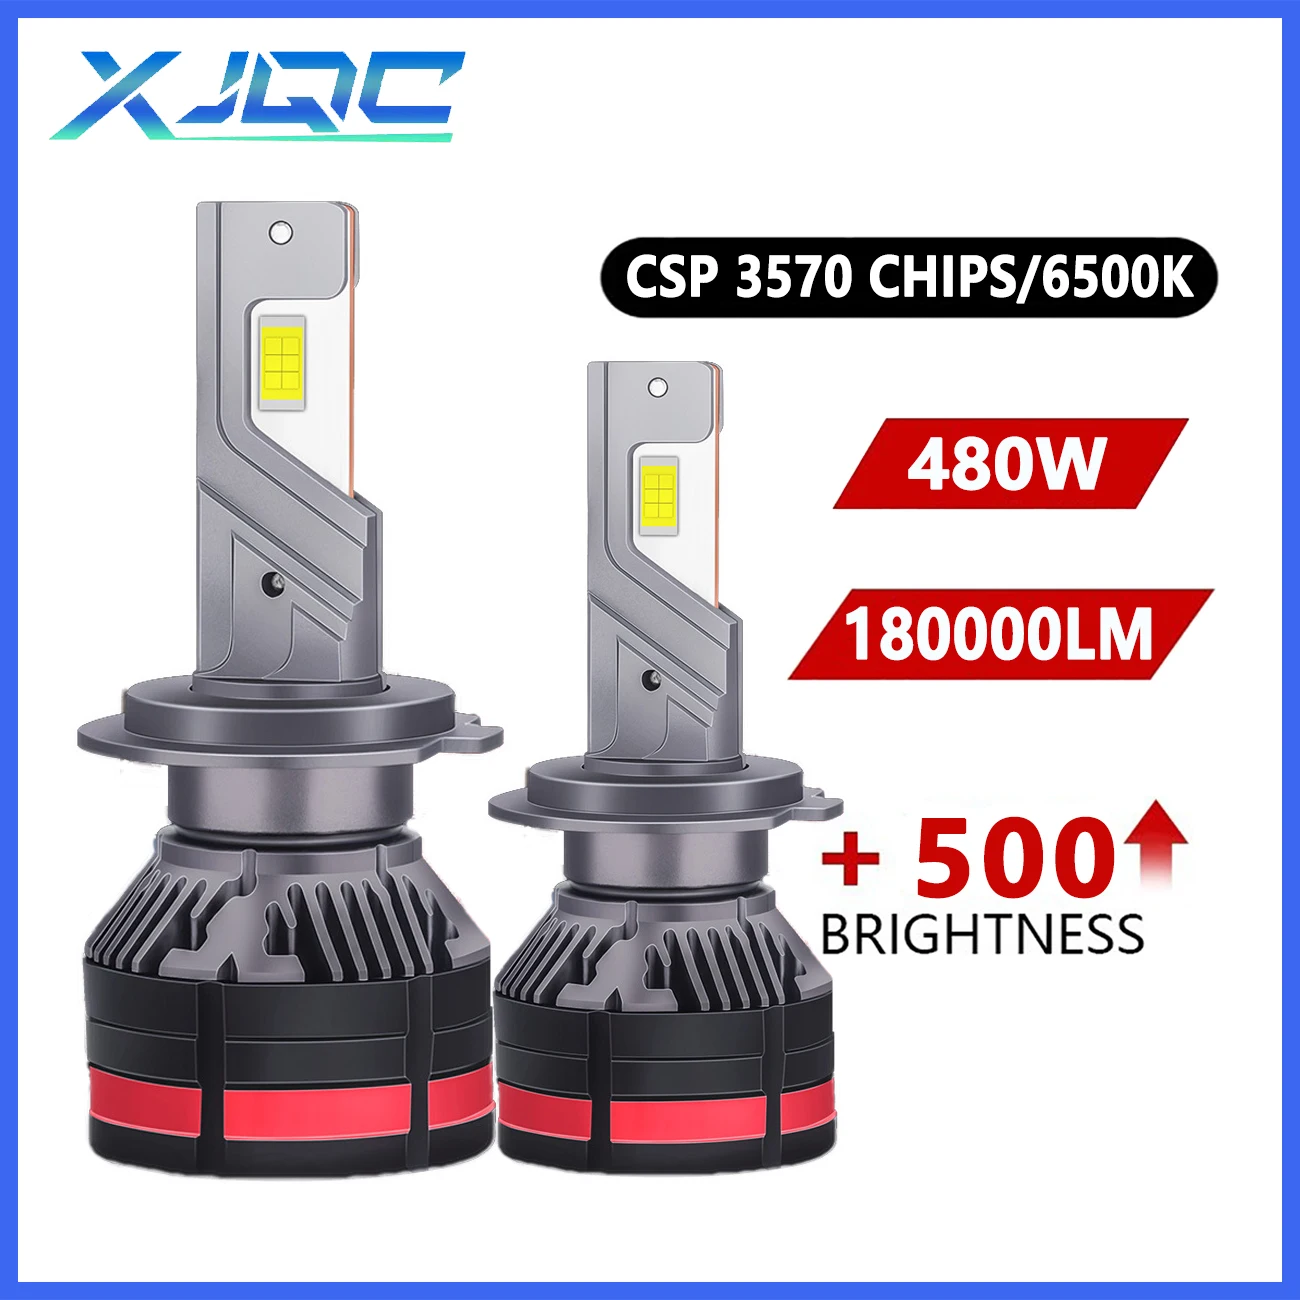 

XJQC M7 H4 H7 автомобильные фонари головного света 180000LM 6500K 480W H1 H3 H11 9005 9006 9012 CSP 3570 чипы 12 В H8 H9 мощная автомобильная лампа